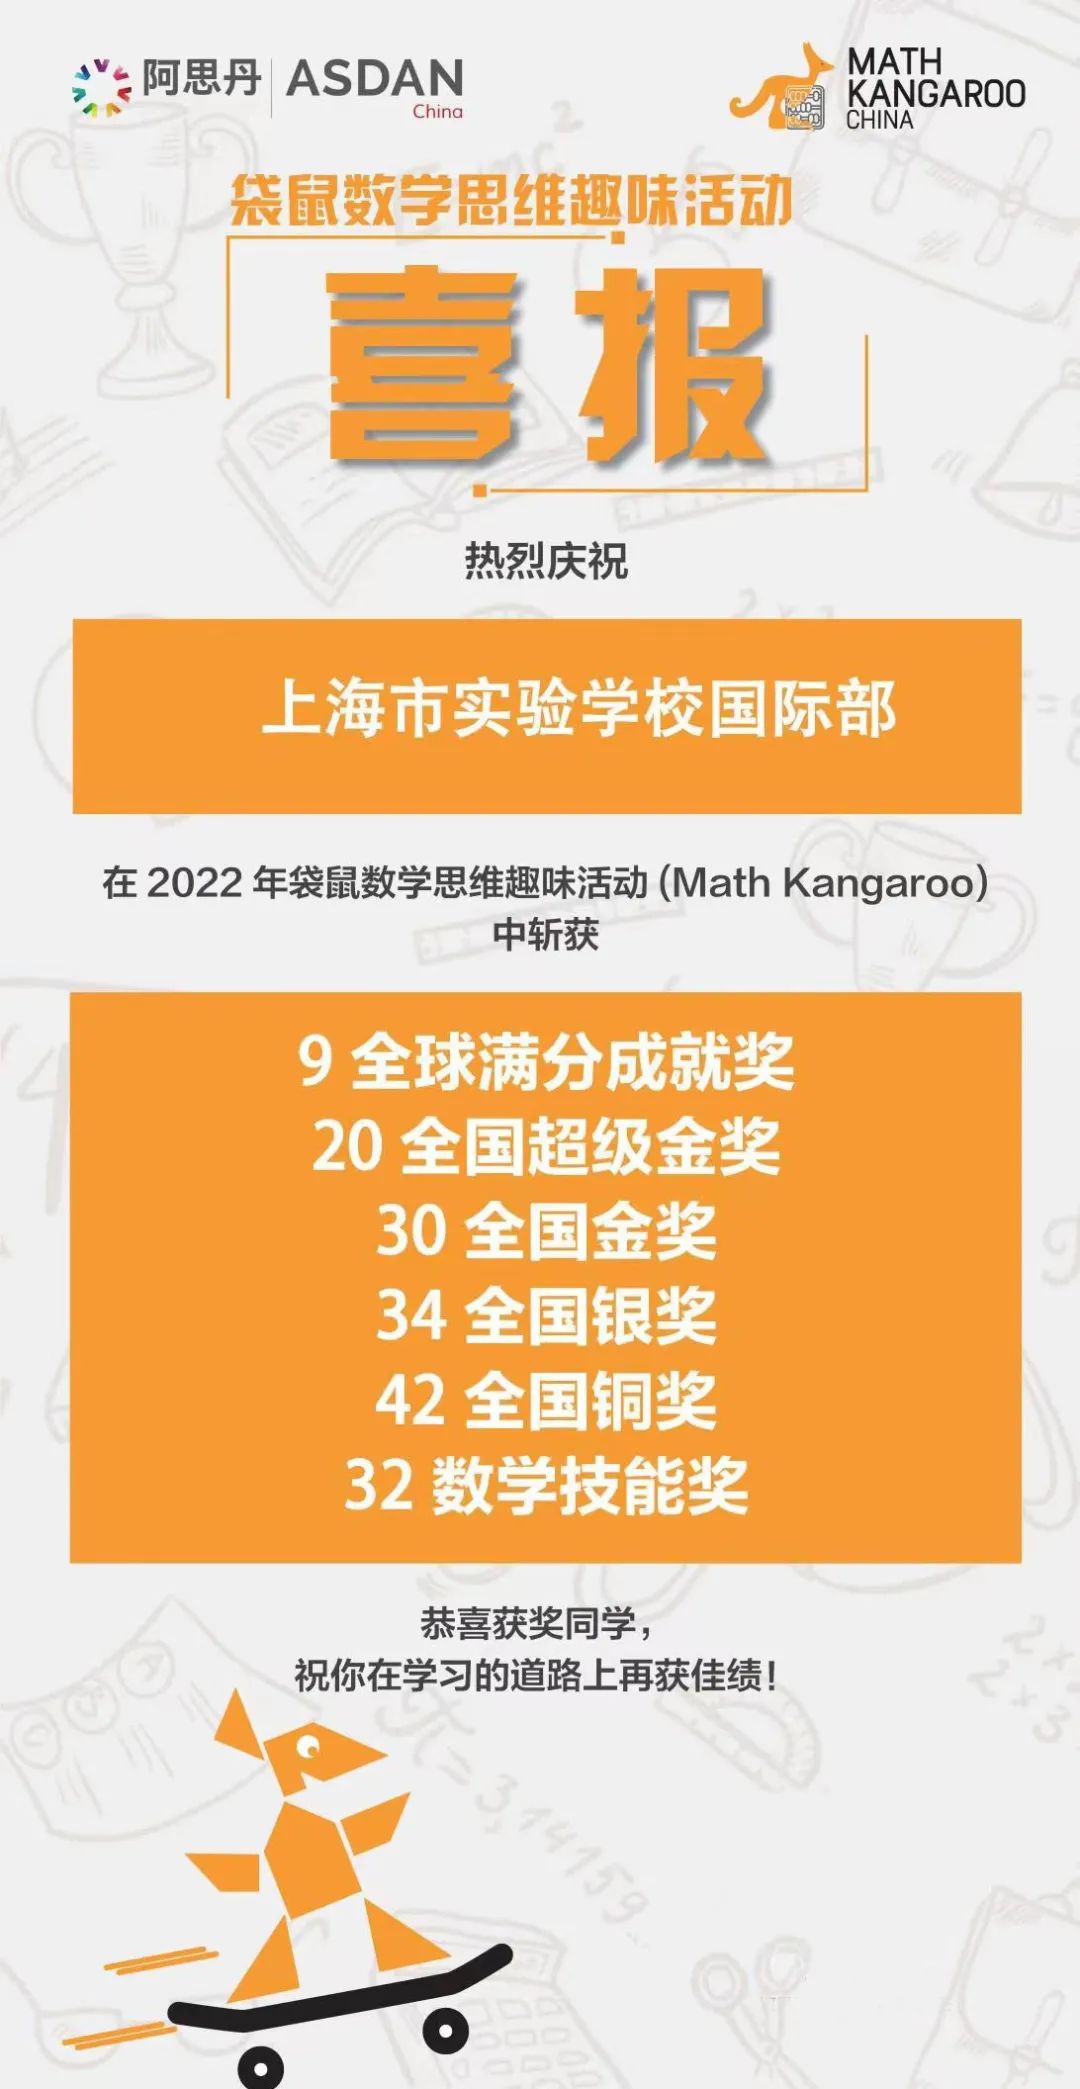 2022年袋鼠数学竞赛上海市实验学校国际部奖项揭晓